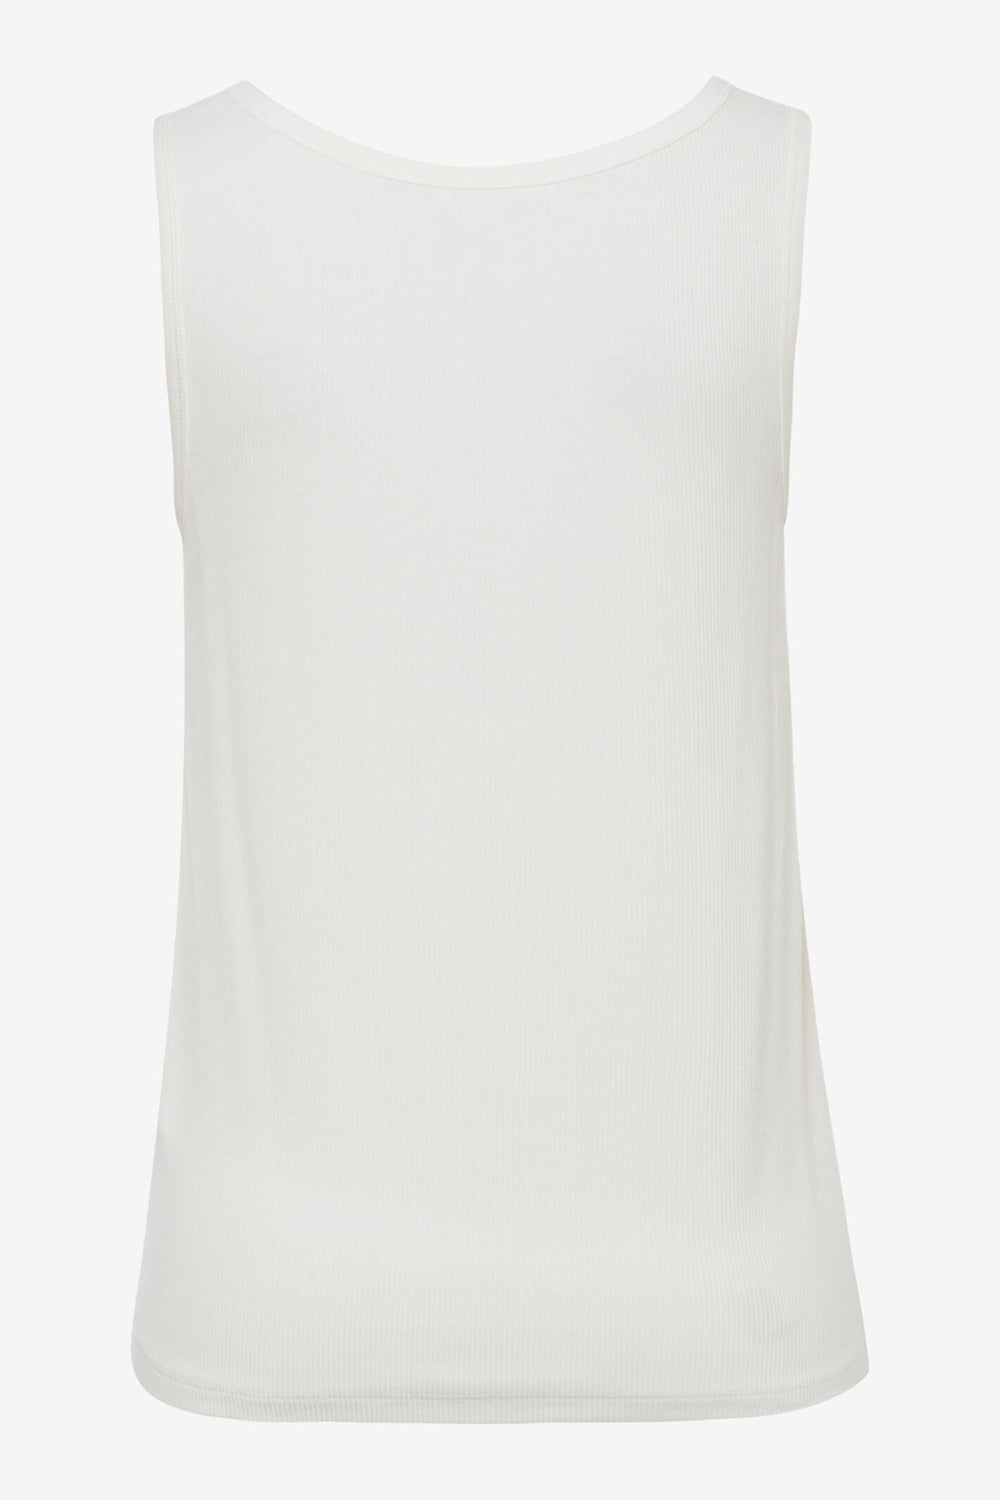 Brax Ivy 34-4707/98 White Vest Top - Shirley Allum Boutique